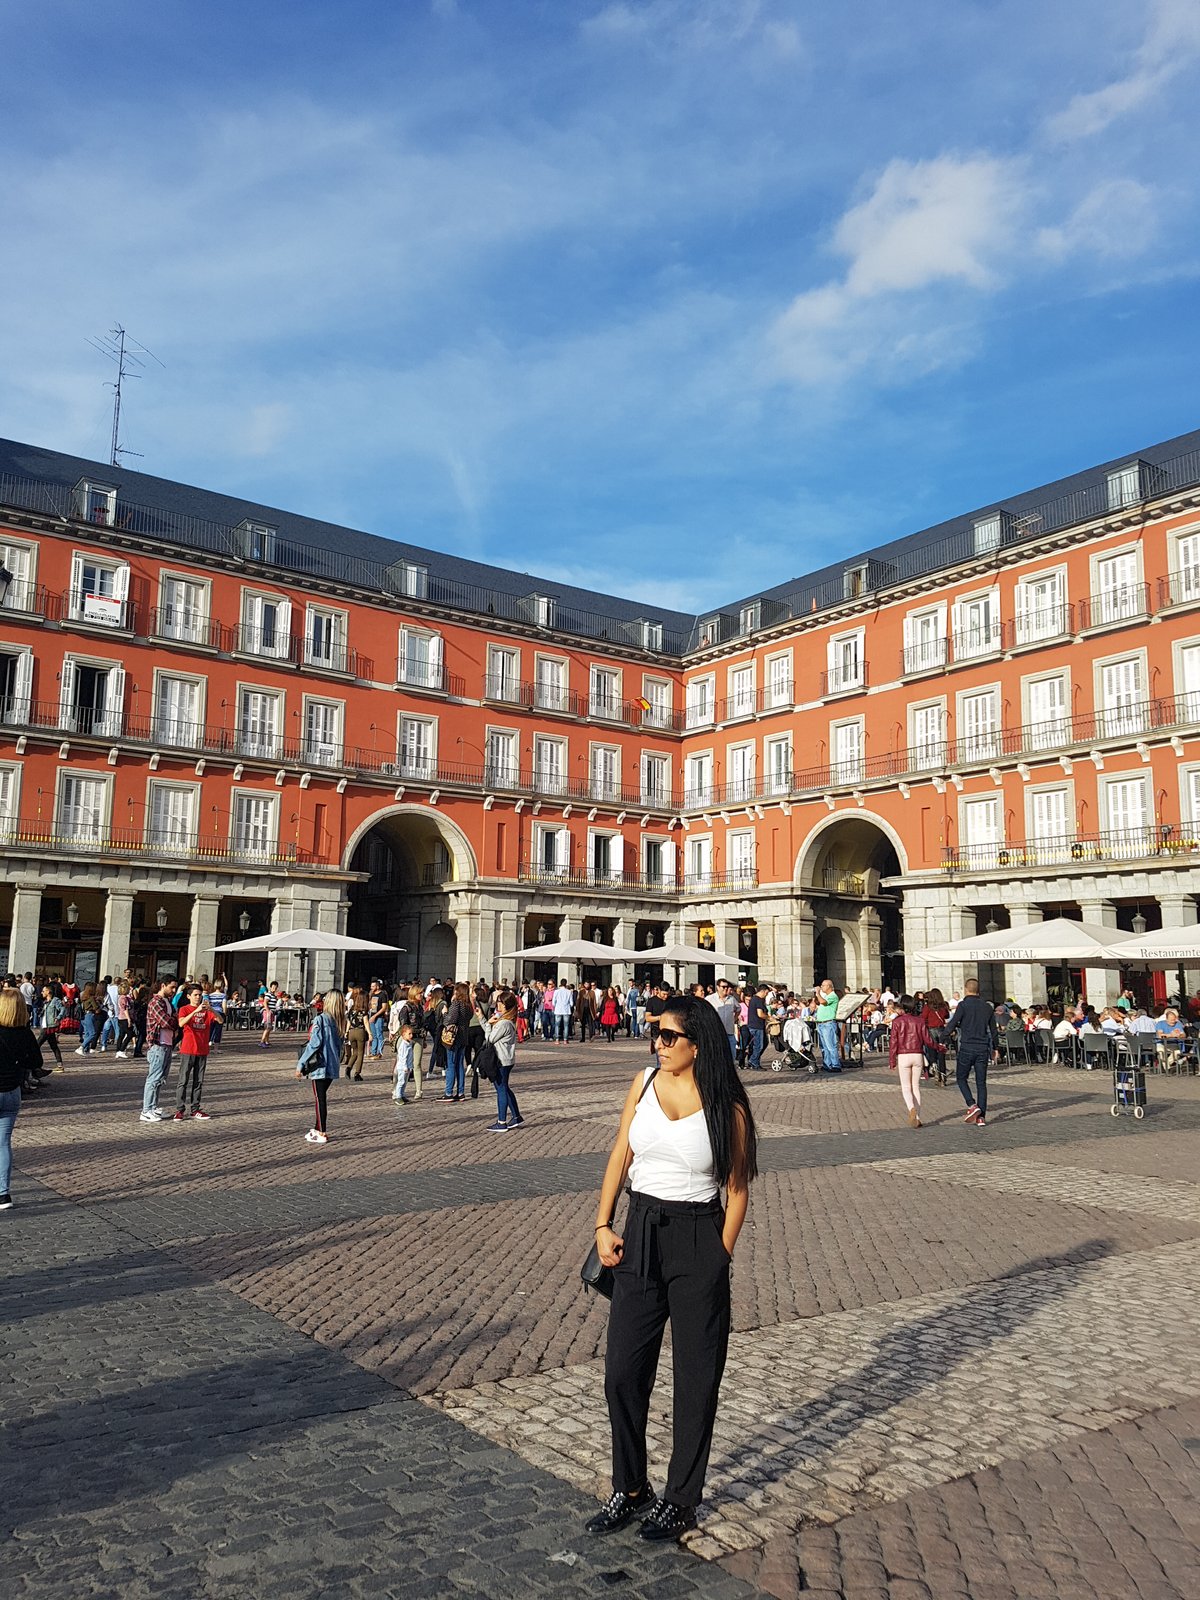 מדריד - ארבעה ימים בבירת ספרד, מדריד, המלצות, טיפים, מדריך, Madrid, אירית אסלן, מתוקתקת, בלוג, Irit Aslan